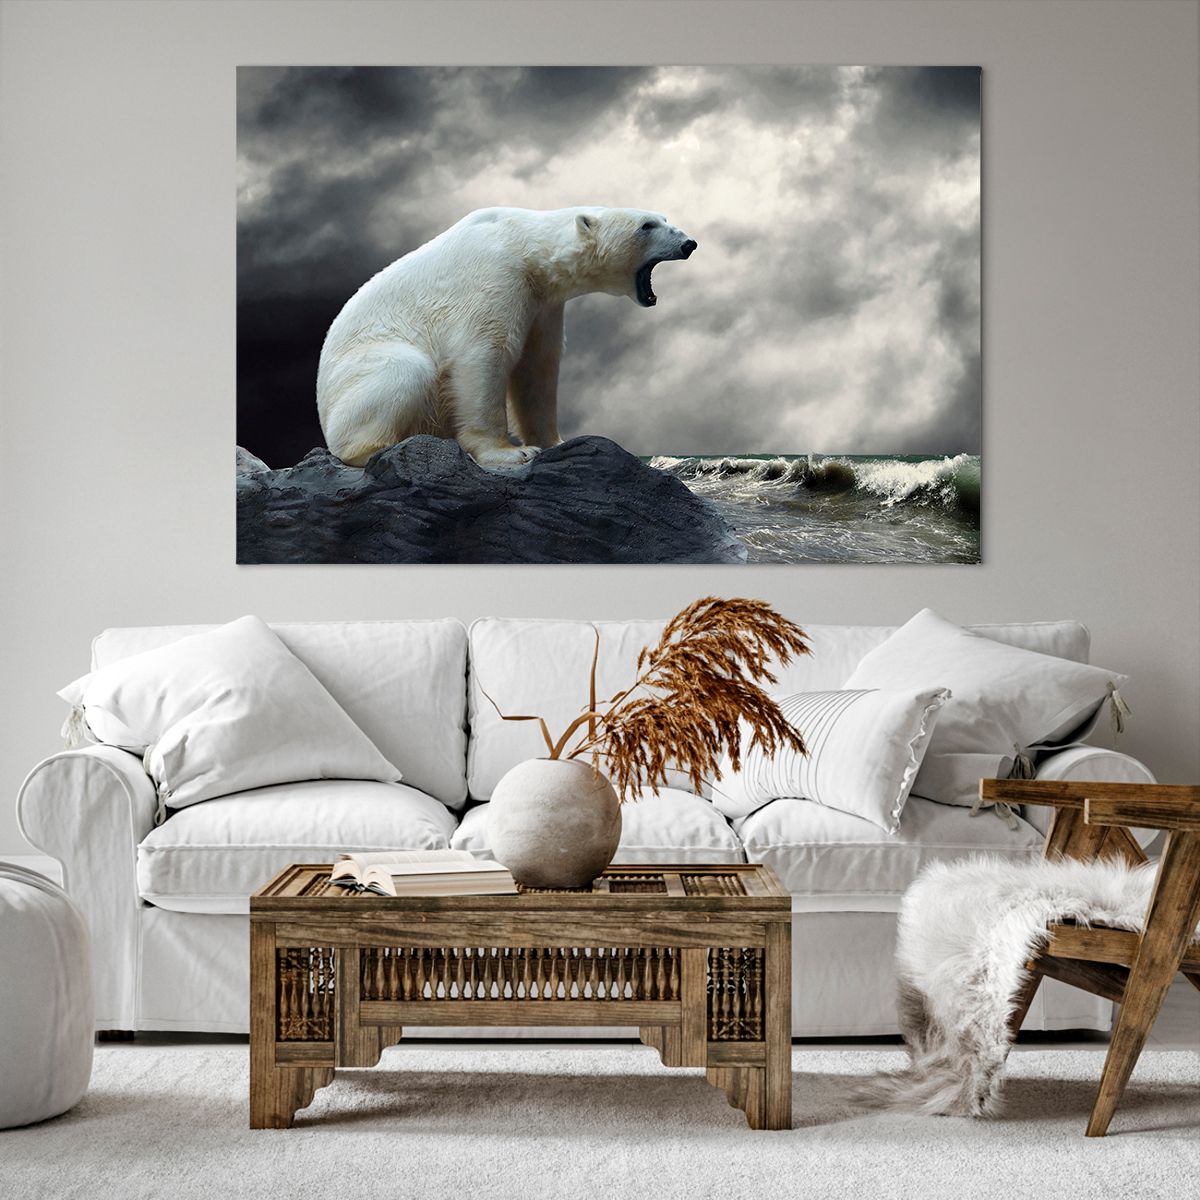 Obrazy na płótnie Zwierzęta, Obrazy na płótnie Niedźwiedź Polarny, Obrazy na płótnie Ocean, Obrazy na płótnie Natura, Obrazy na płótnie Arktyka